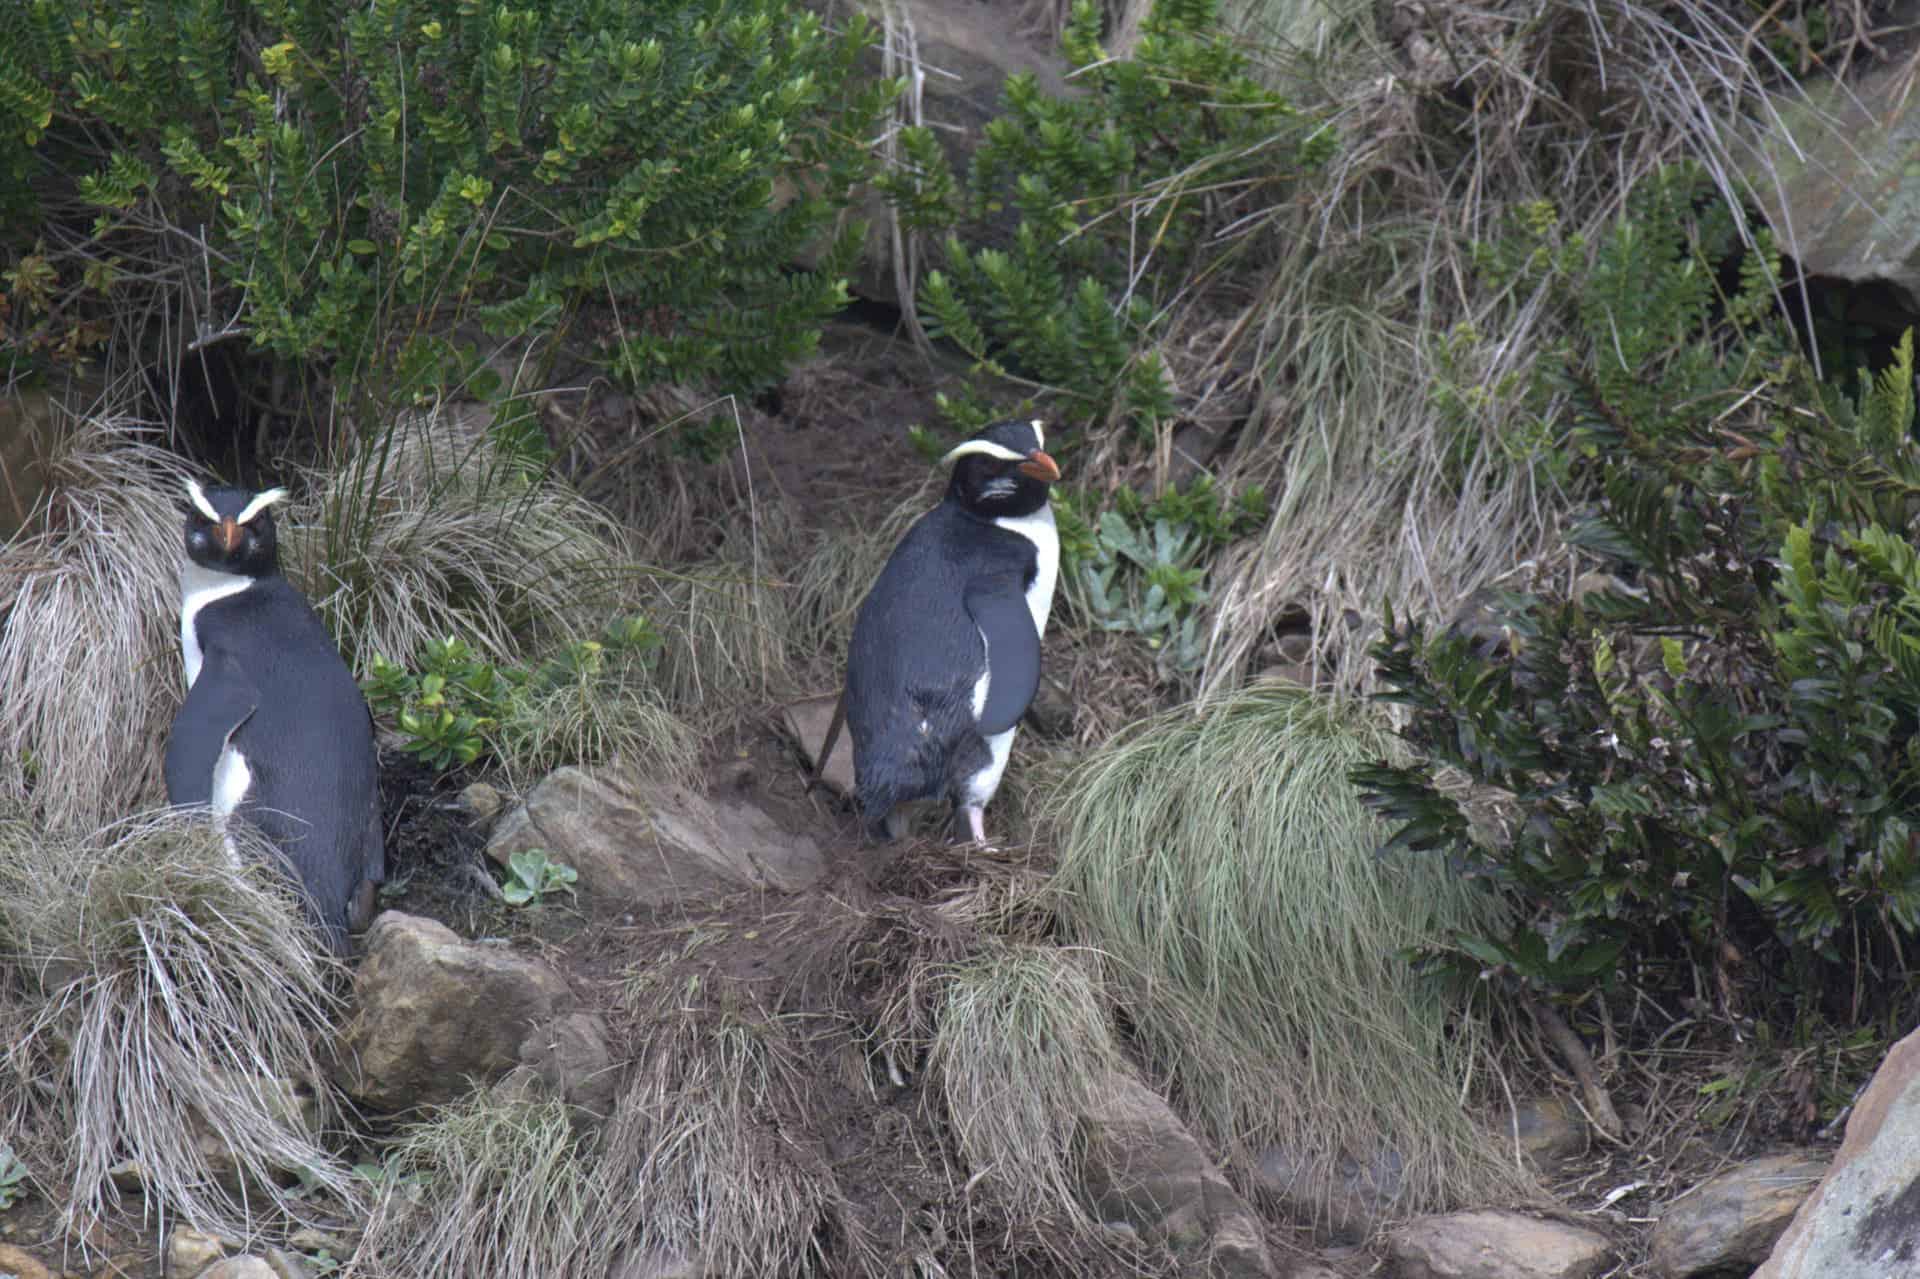 Tawaki penguins. Image credits: travelwayoflife.